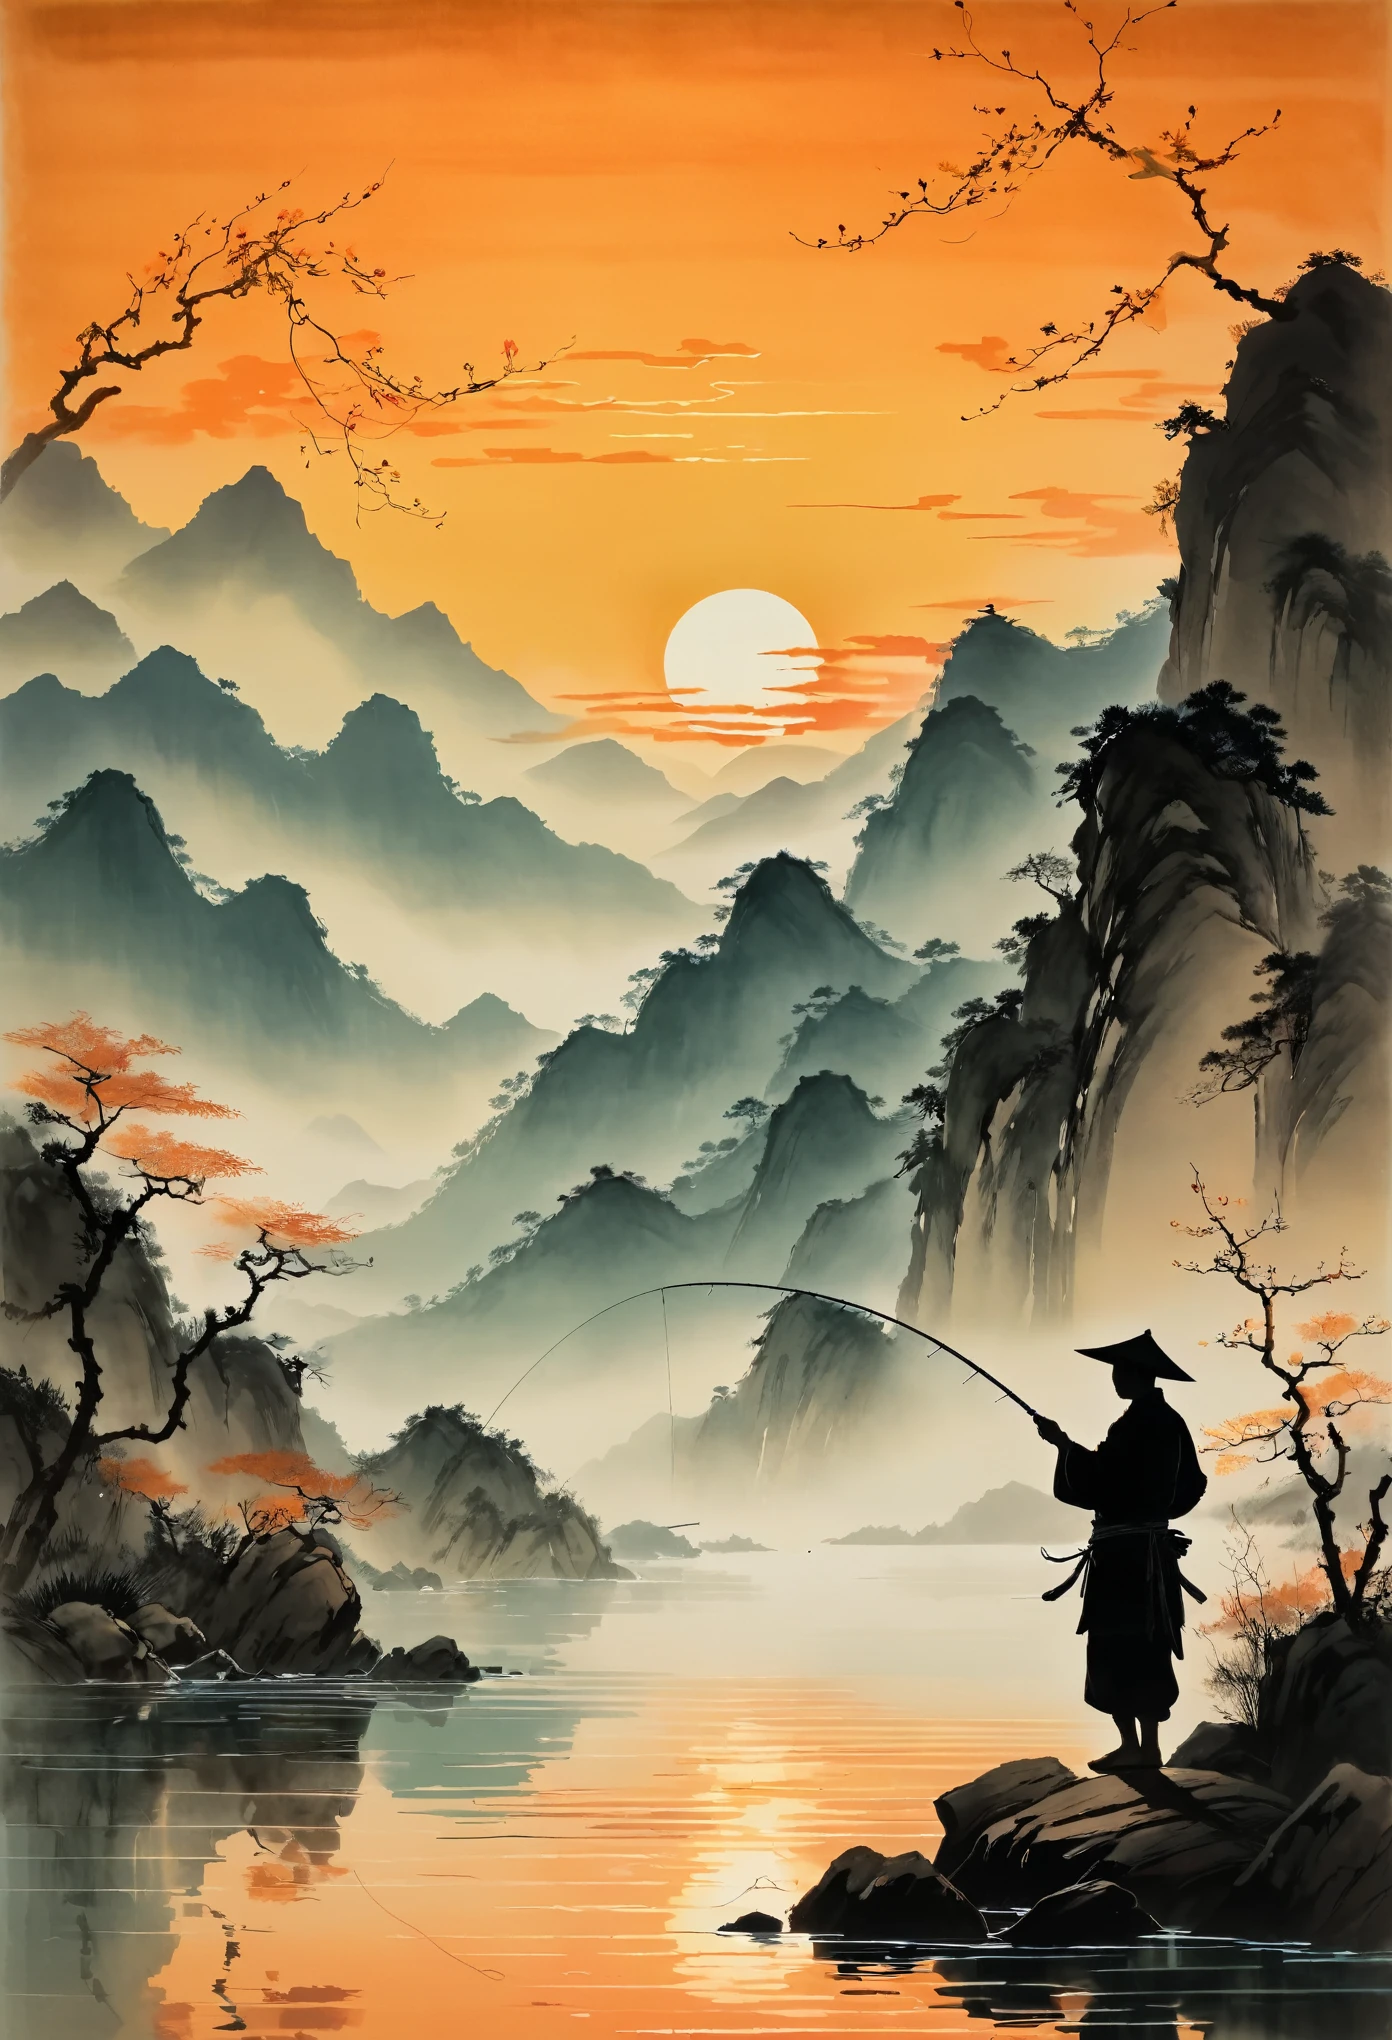 Uma silhueta de um pescador lançando sua linha na água ao pôr do sol, com montanhas ao fundo e águas calmas refletindo tons alaranjados. A cena é retratada no estilo do artista chinês Zhang Daqian. 